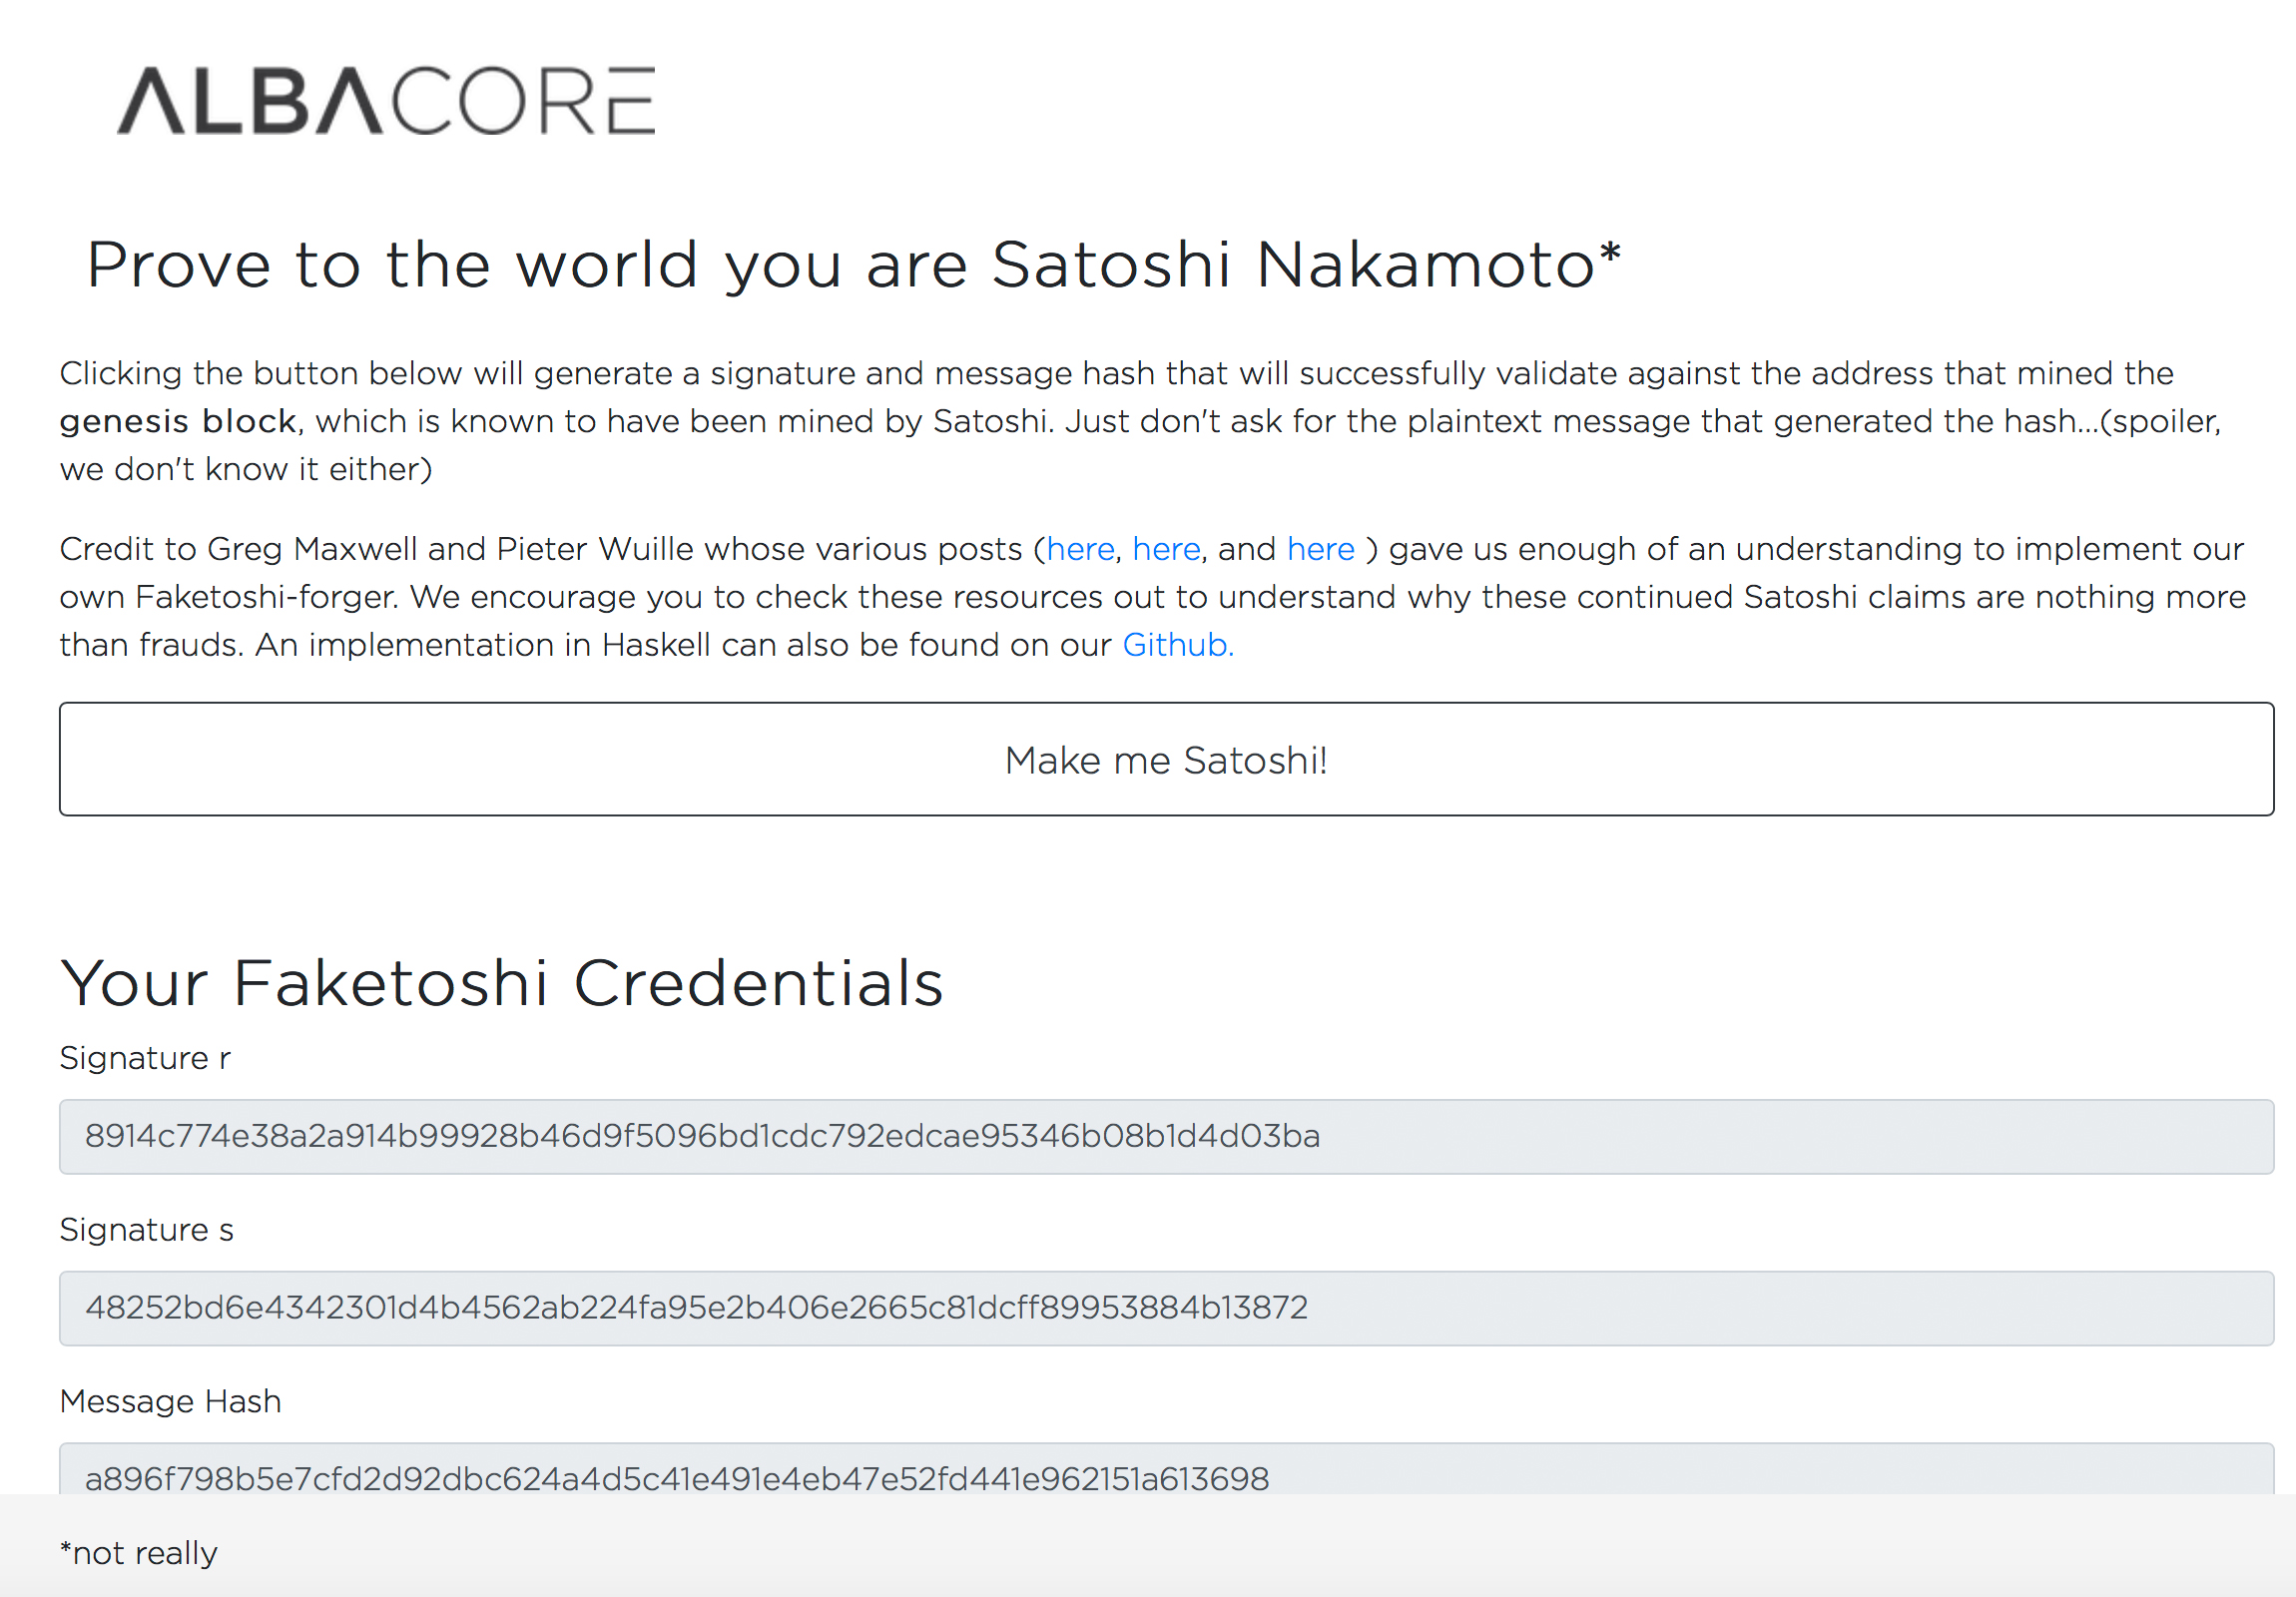 This ‘Faketoshi’ Signature Tool Allows Anyone to Become Satoshi Nakamoto